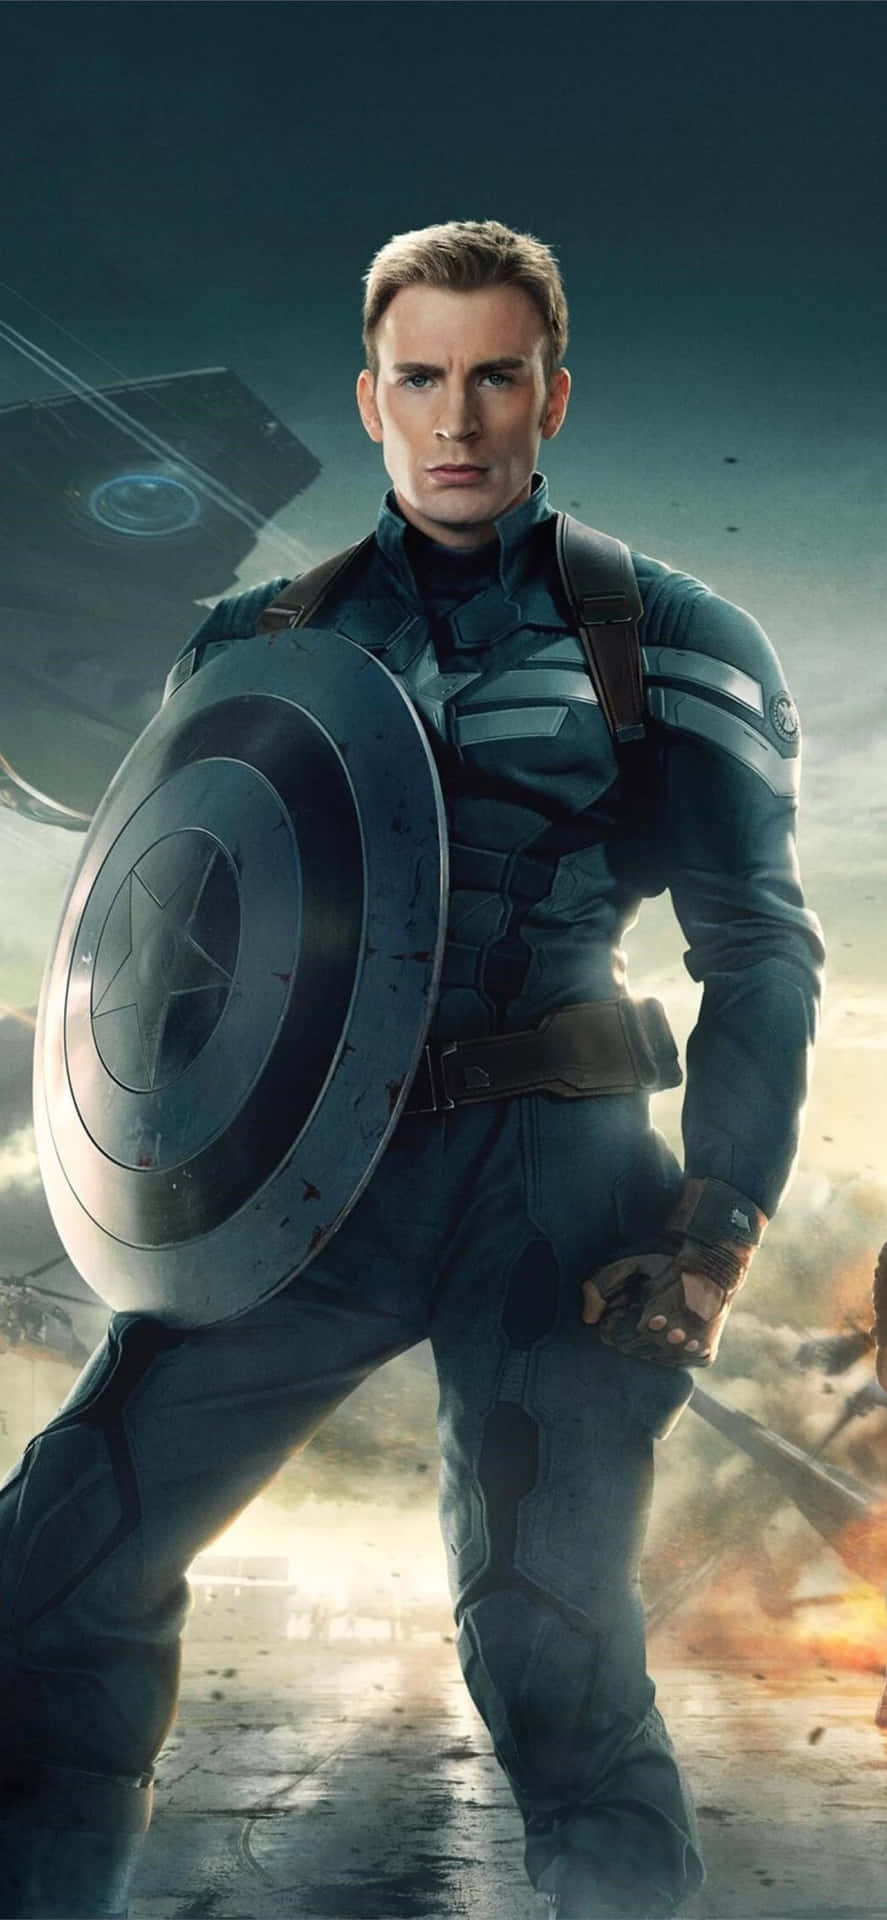 Fondode Pantalla De Steve Rogers, El Capitán América, Héroe Del Mcu En 